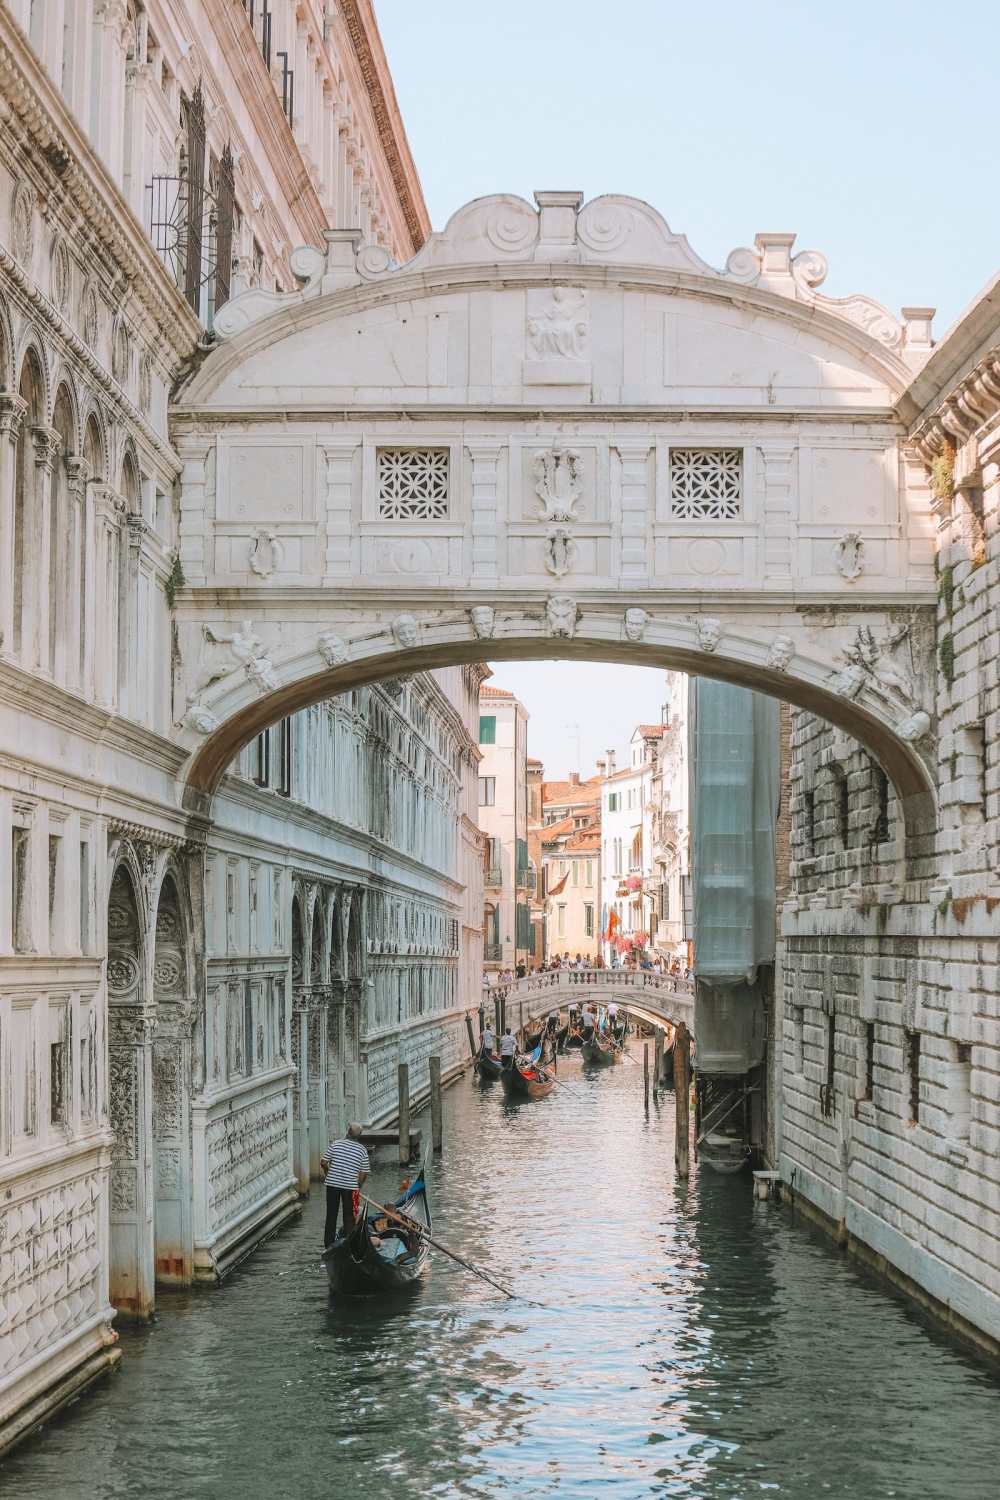  Фотографии и открытки из Венеции, Италия (17) 